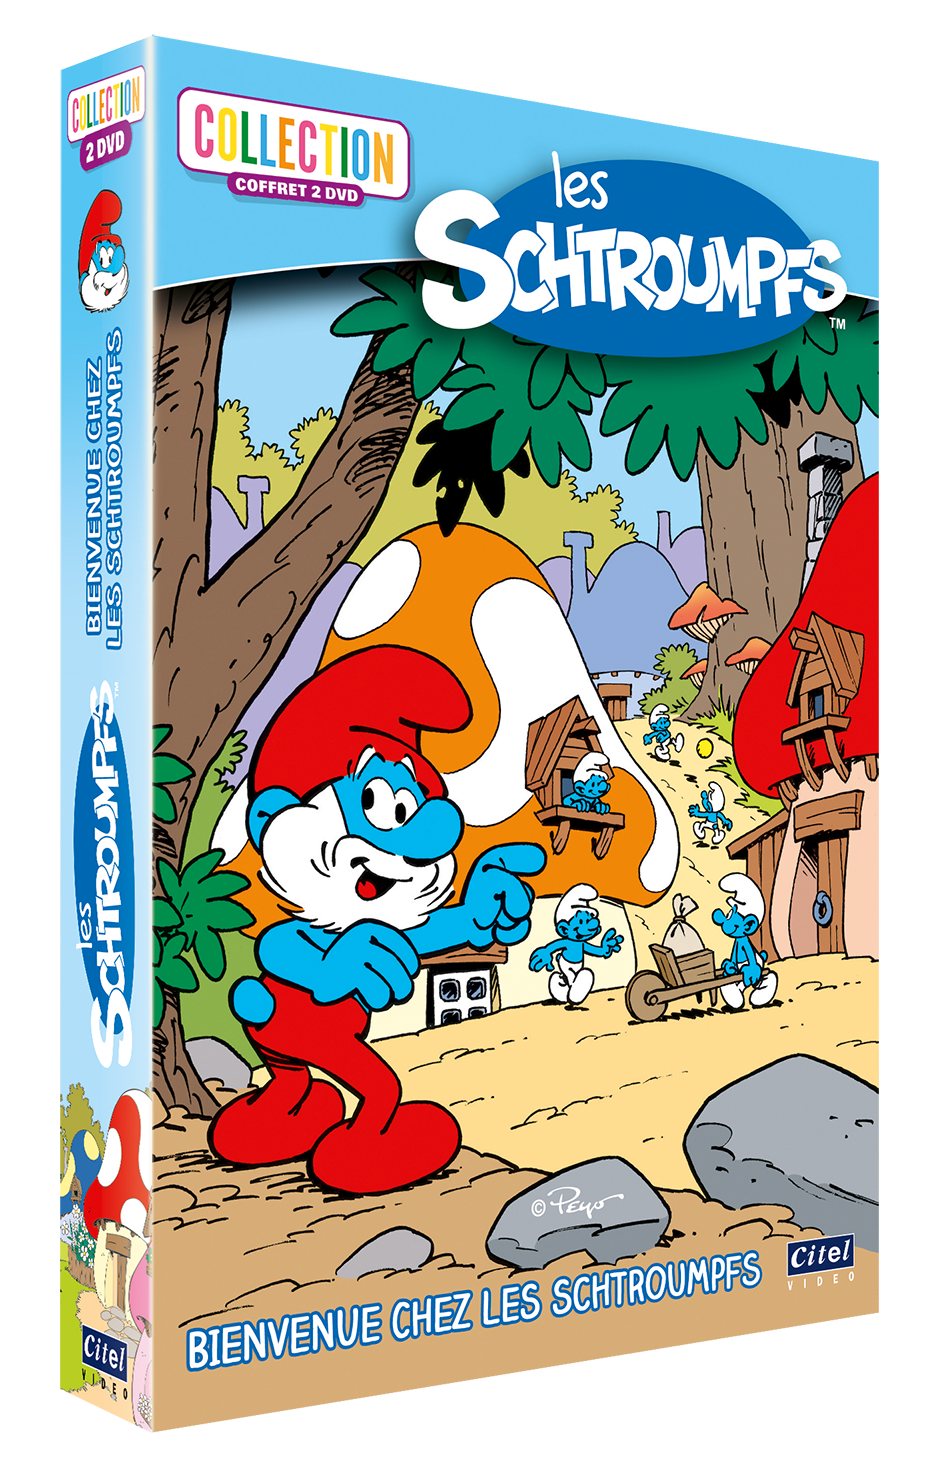 Les Schtroumpfs - Bienvenue chez les Schtroumpfs - Collection 2 DVD